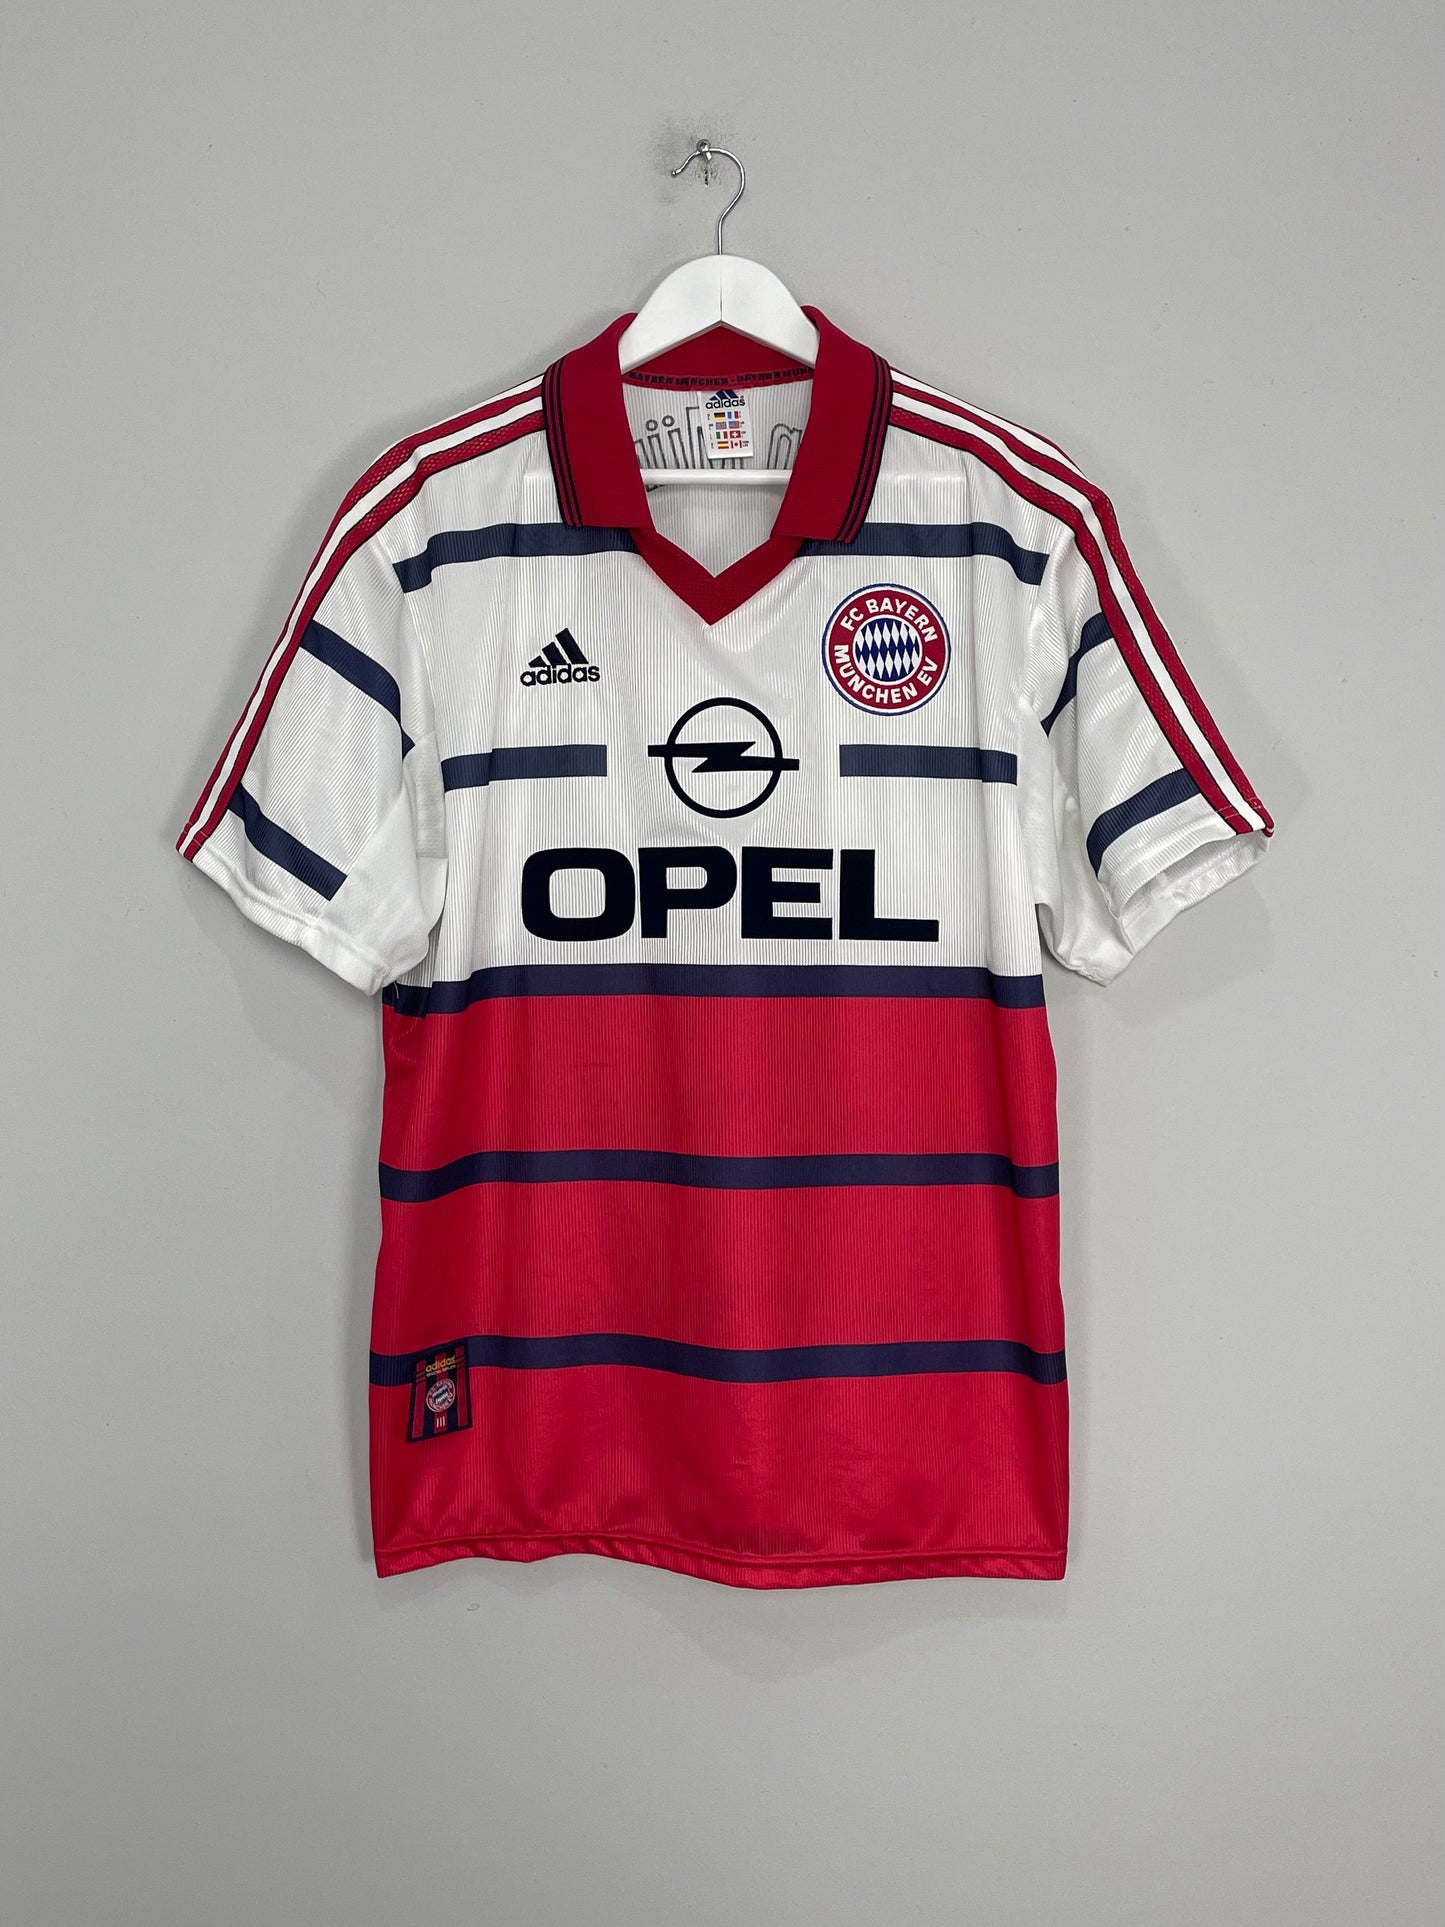 Image of the Bayern Munich shirt from the 1998/00 season